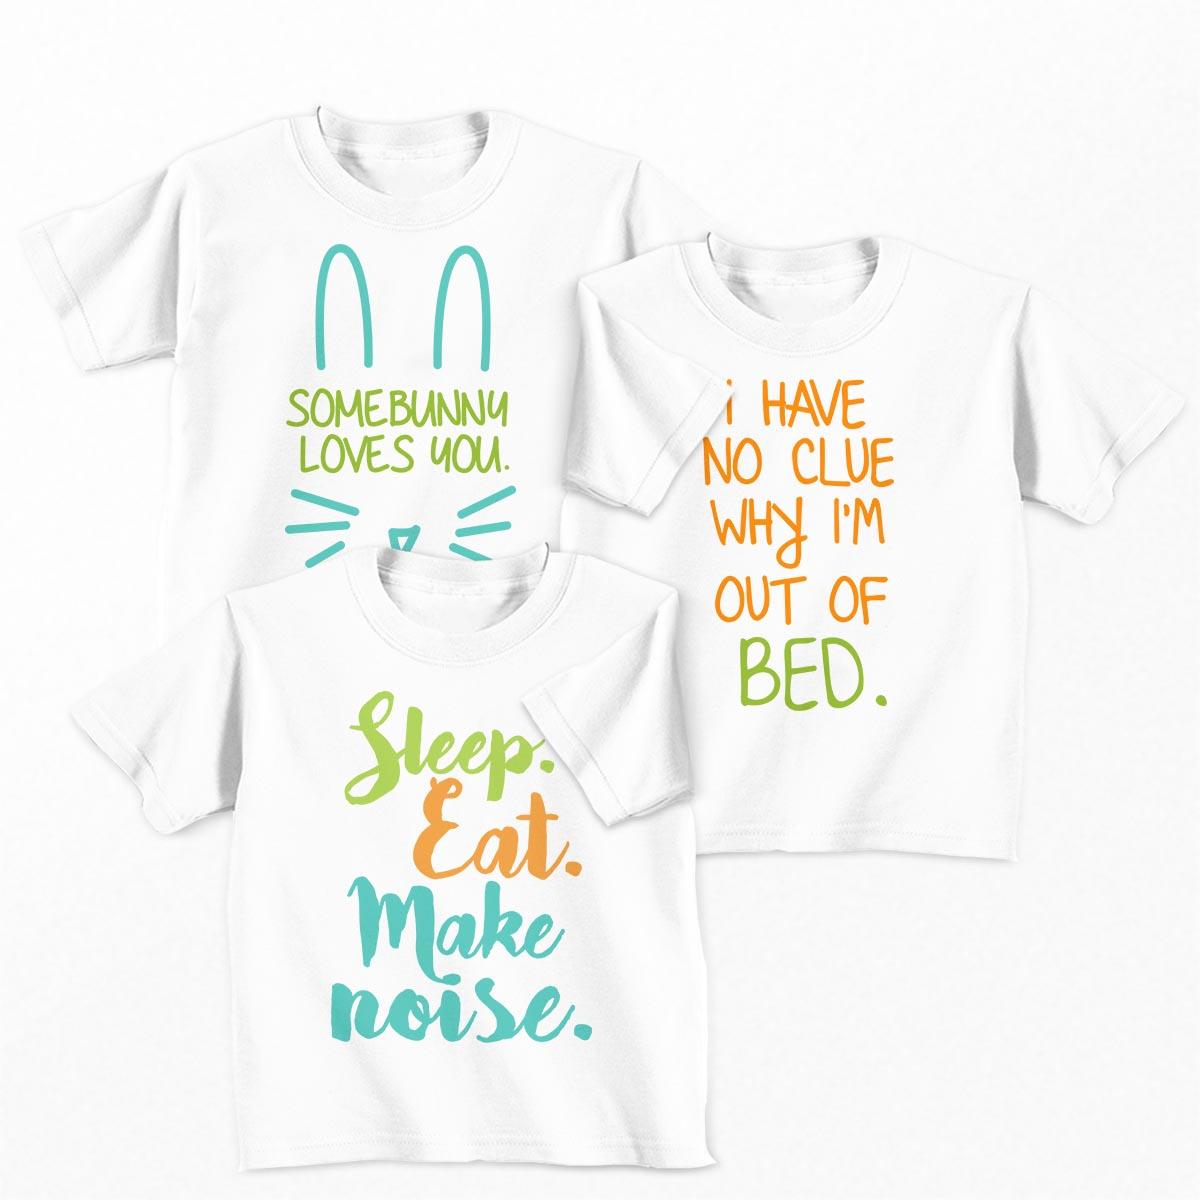 Tricouri copii - Set tricouri Little Bunny - baietel1